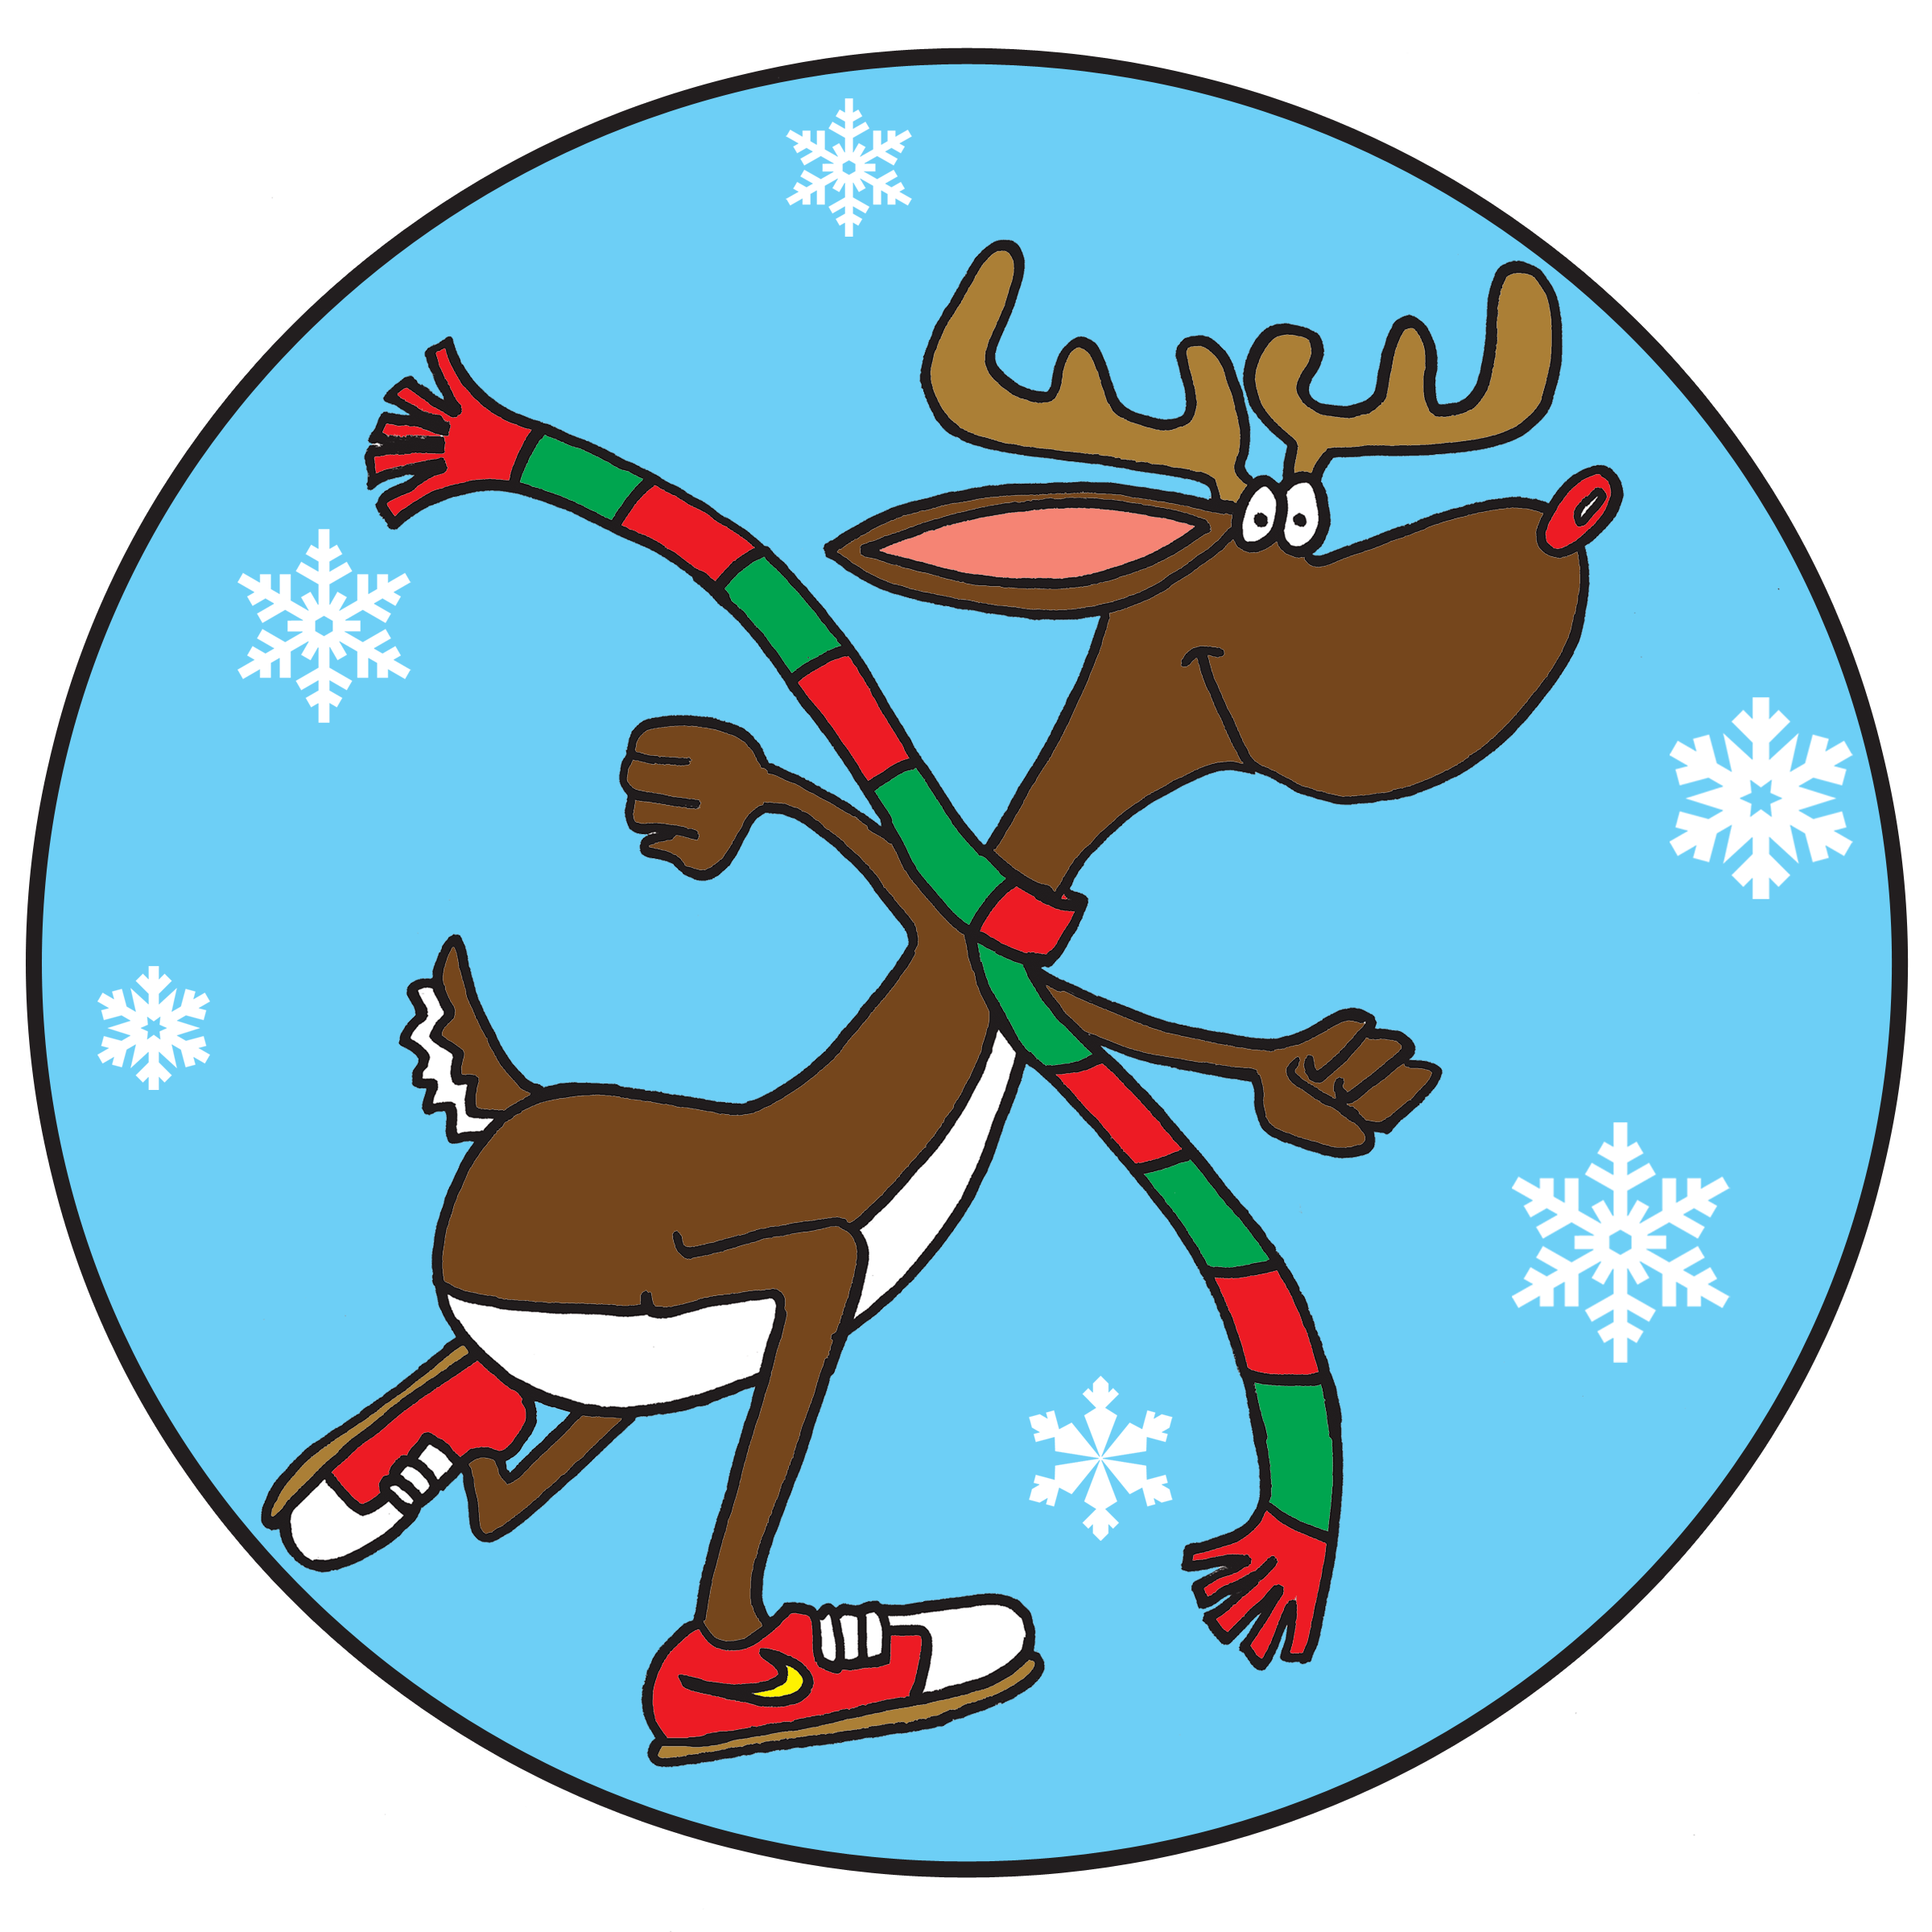  rd annual run. Clipart reindeer cheer